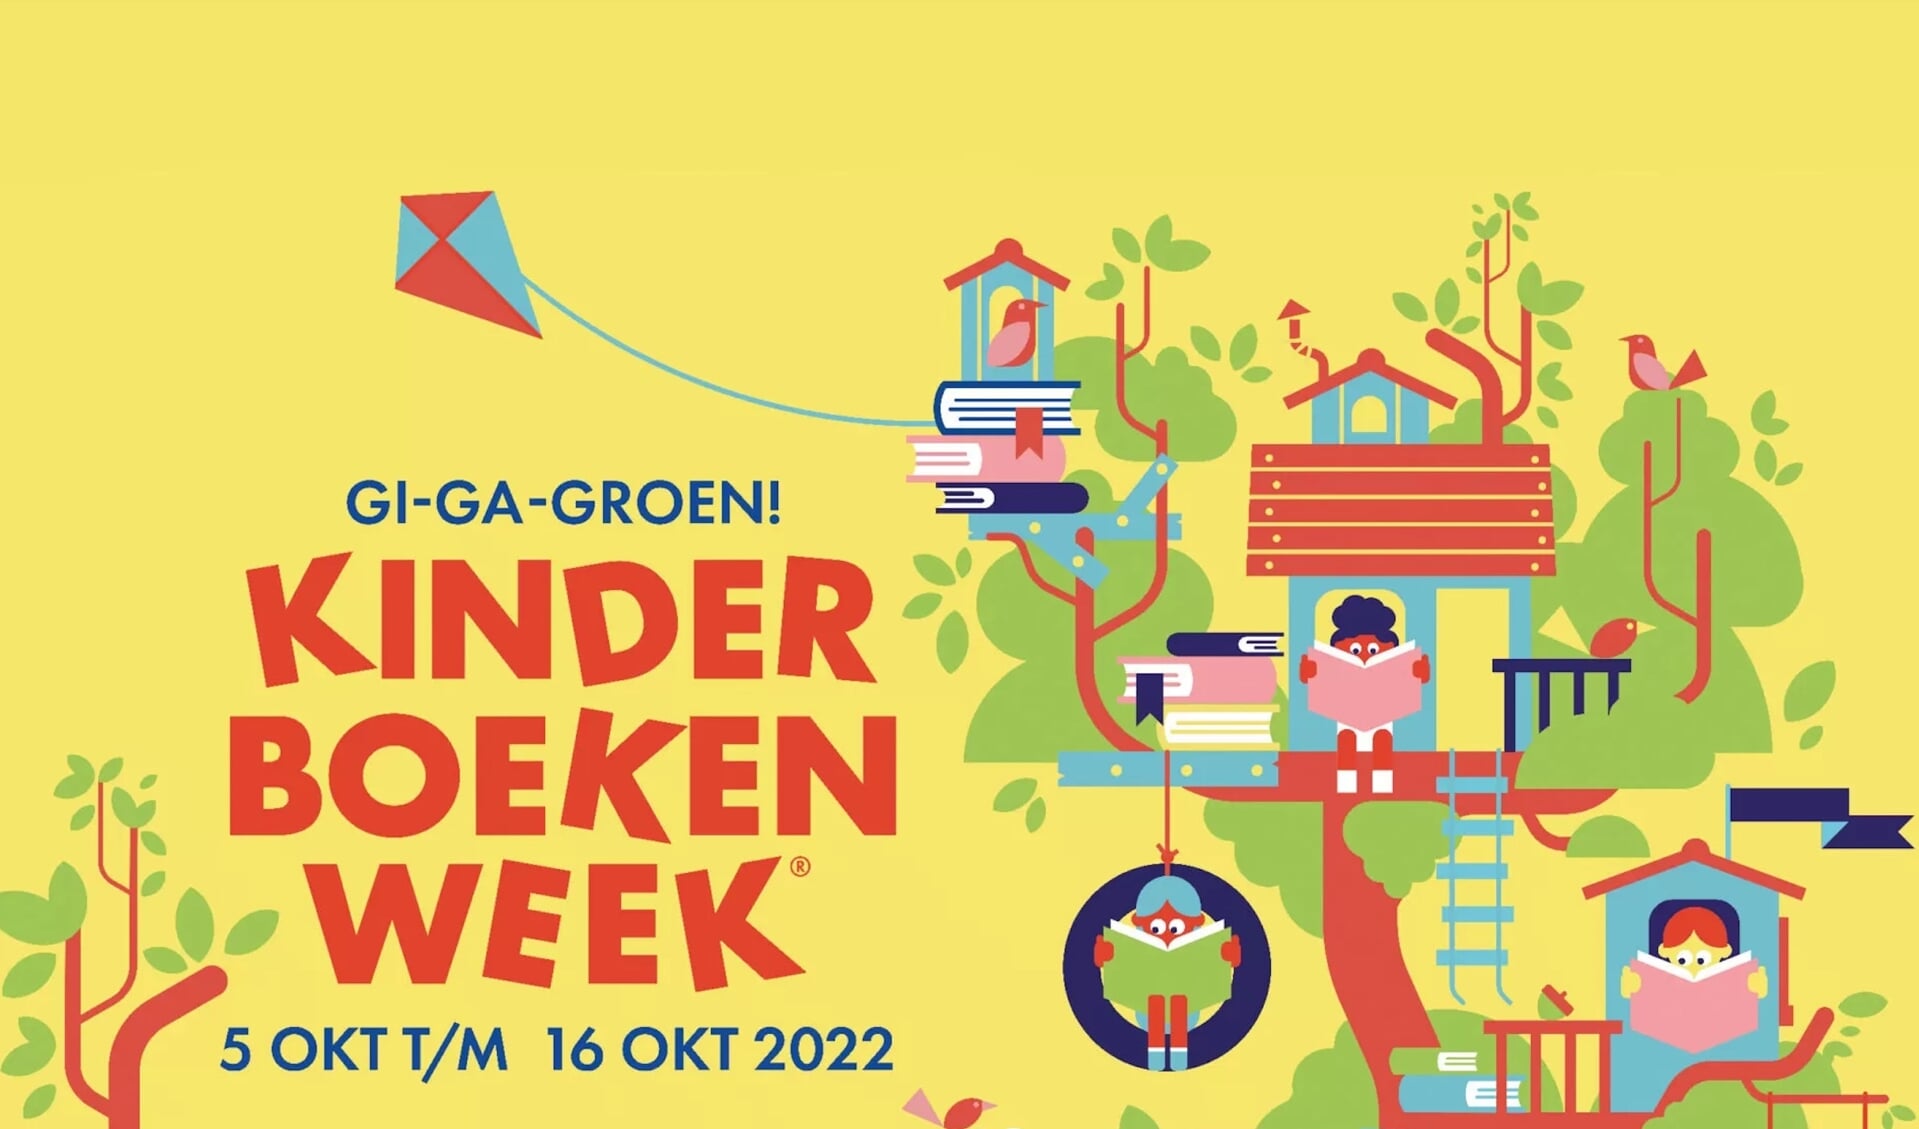 Gi-Ga-Groen Kinderboekenweek 2022